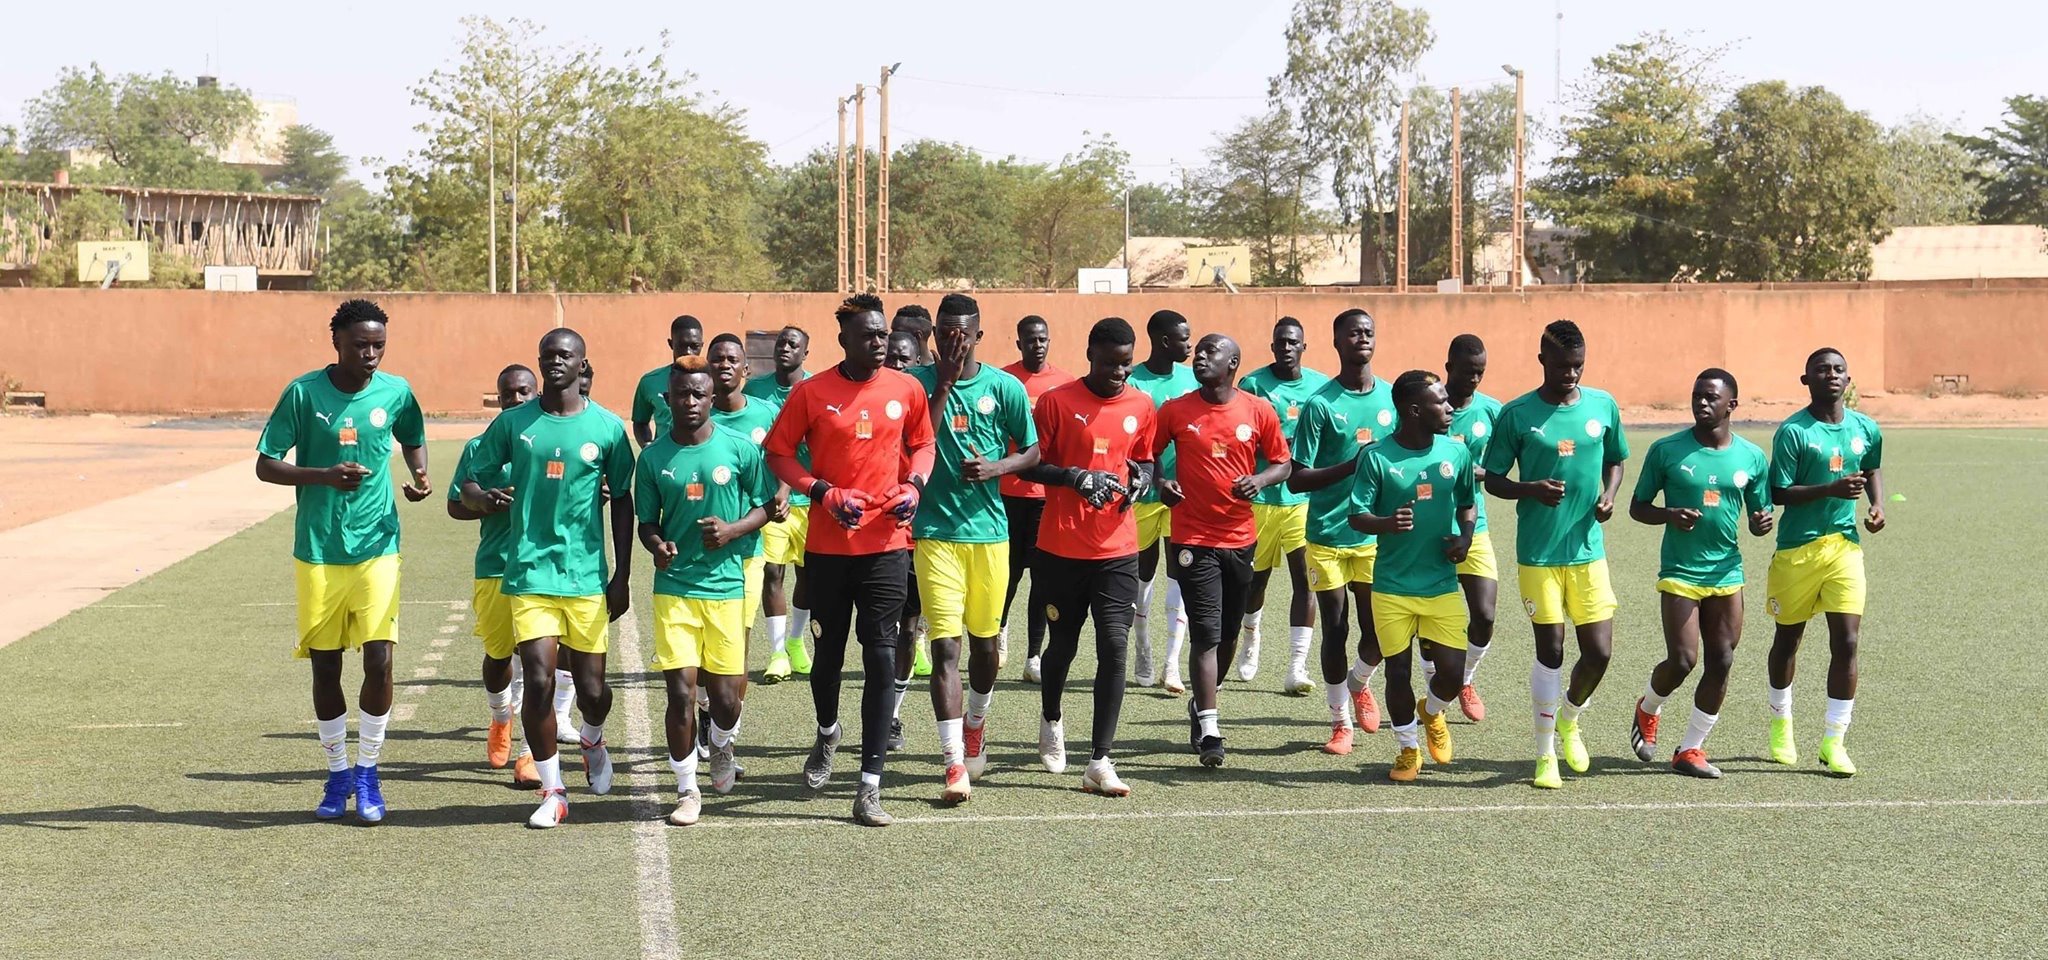 Mondial U17 : Le Sénégal épinglé pour fraude sur l’âge, plusieurs joueurs exclus